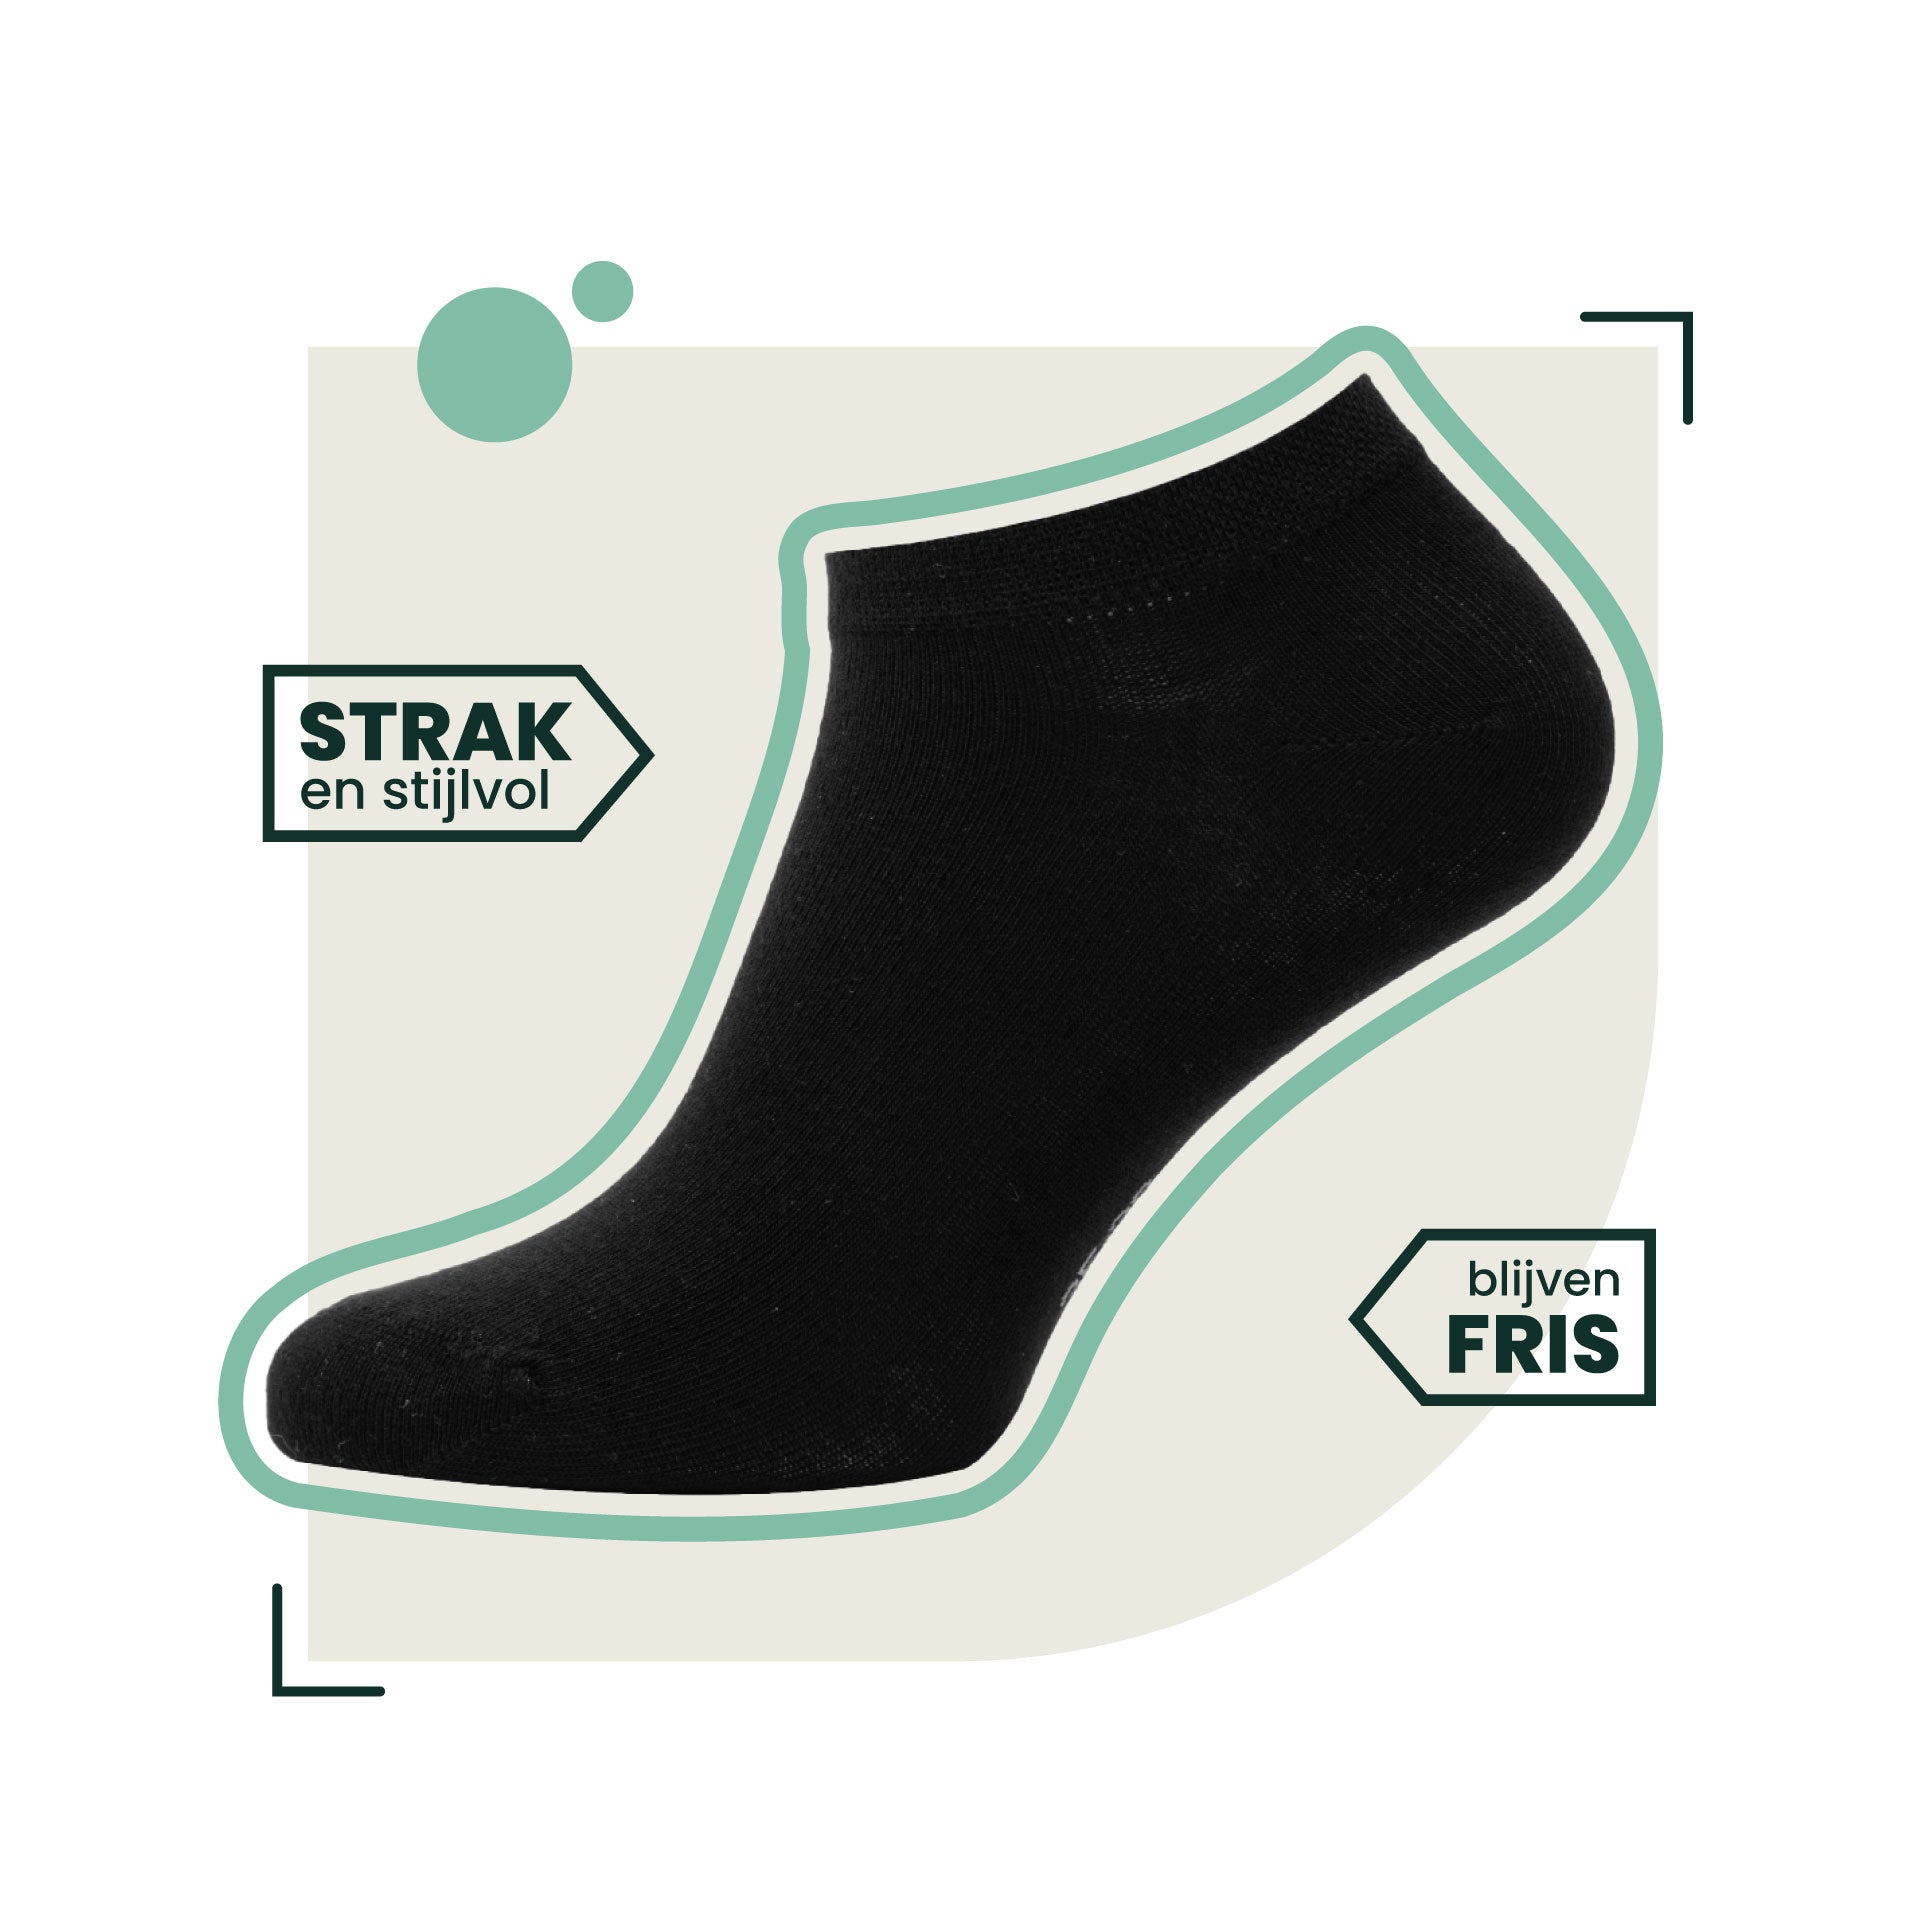 4-pack Jordan Bamboe Sneakersokken - Zwart